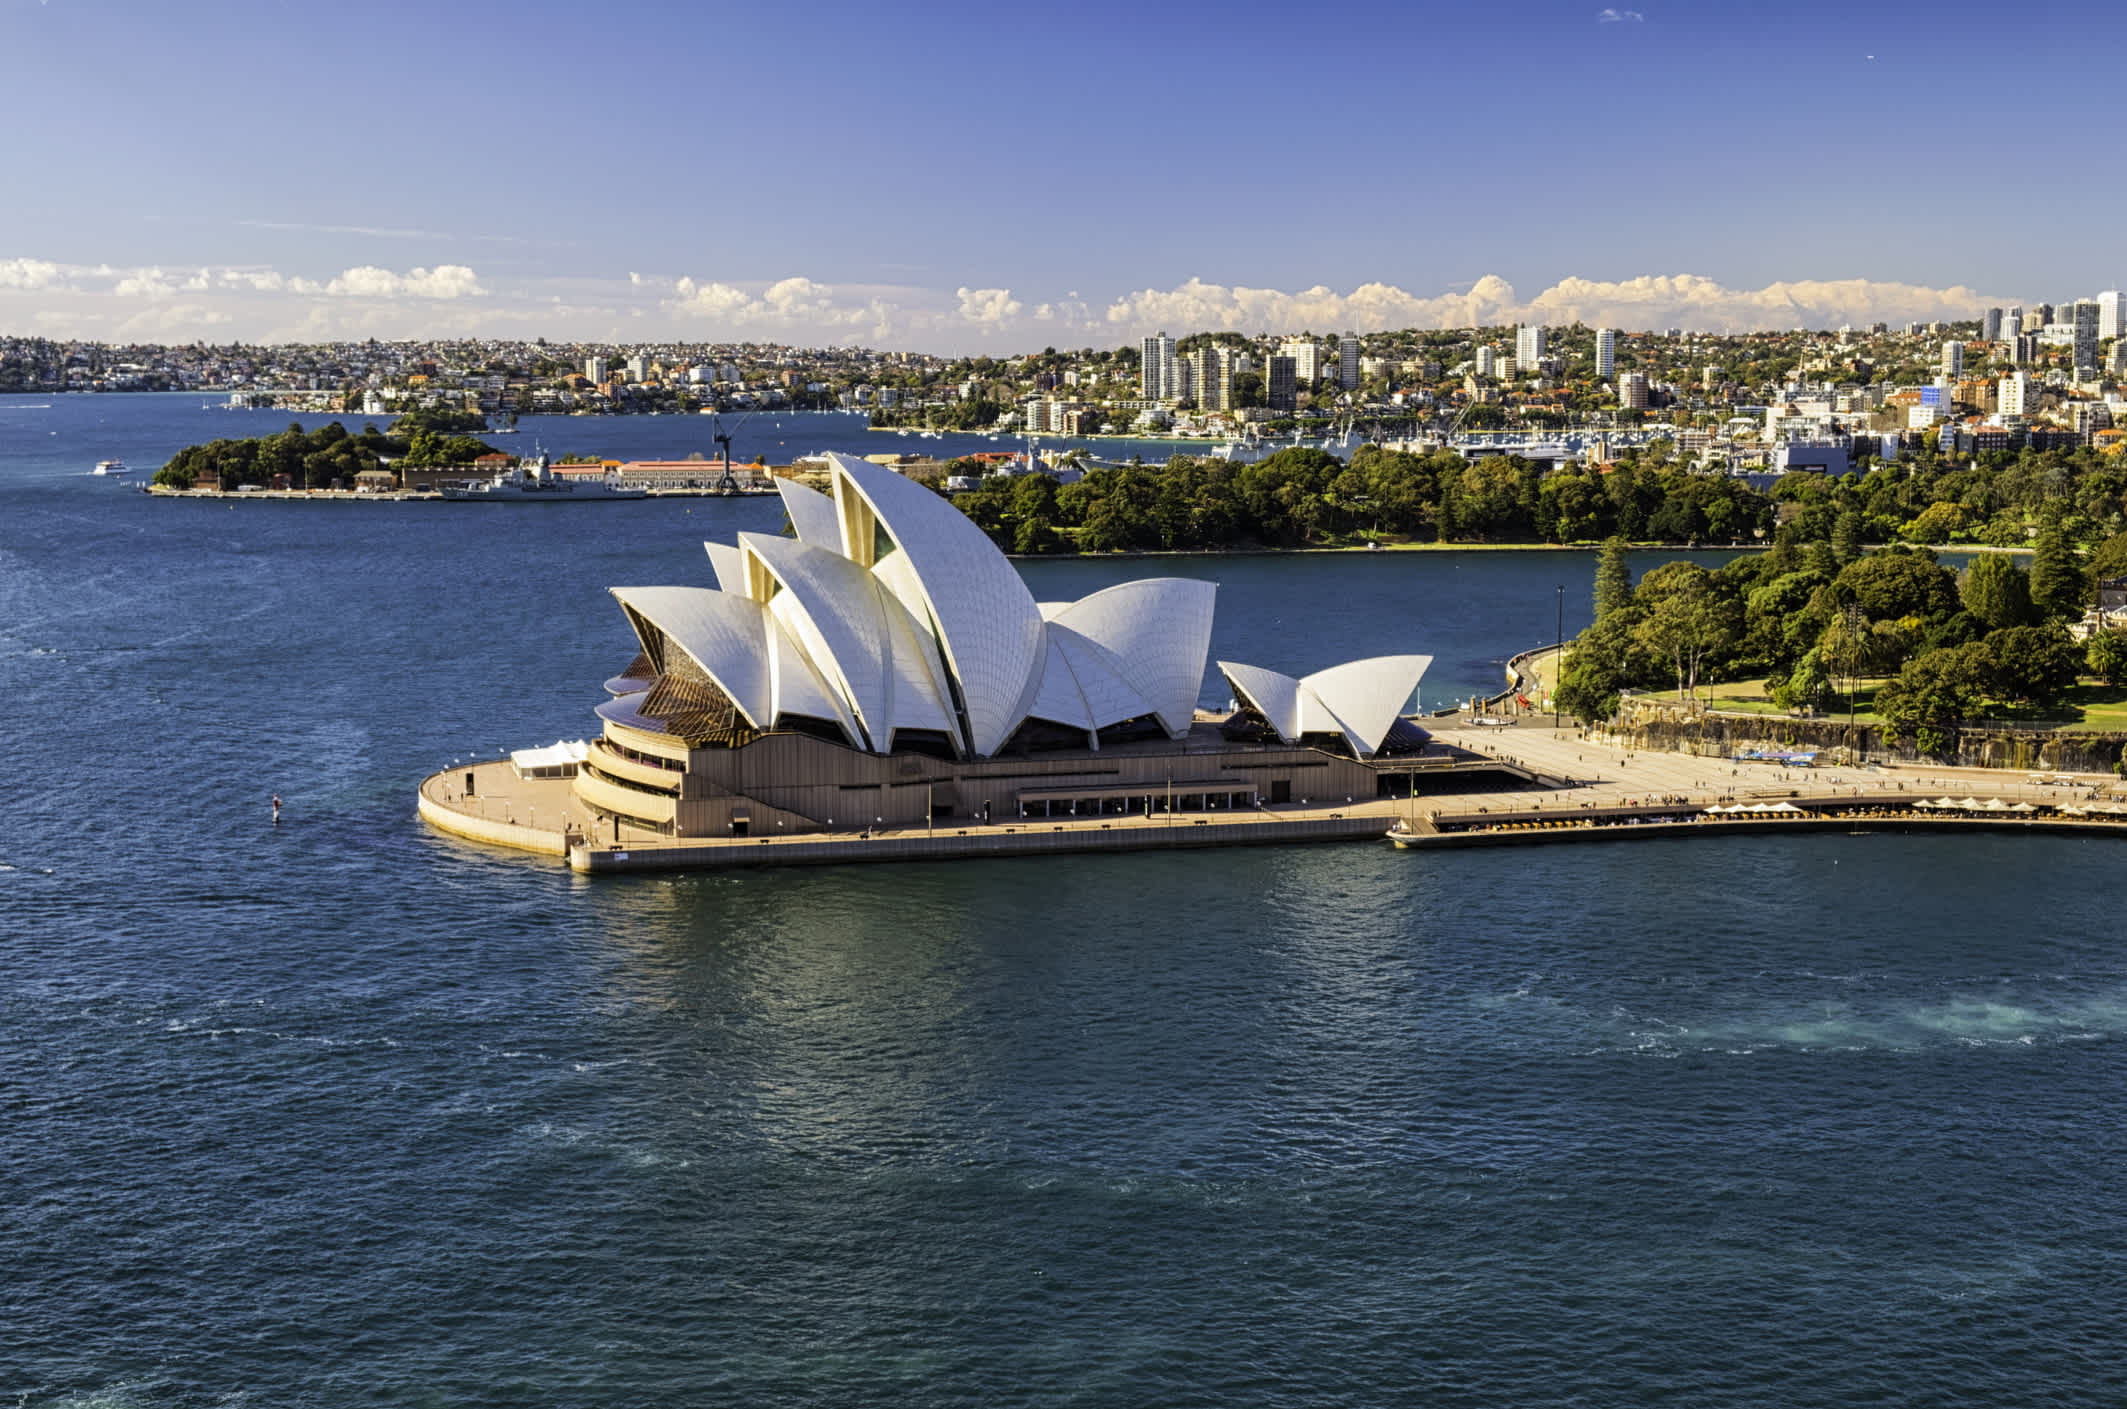 Voyage à Sydney et vue sur le célèbre Opéra House de Sydney et son architecture en forme de voiles de bateau en Australie